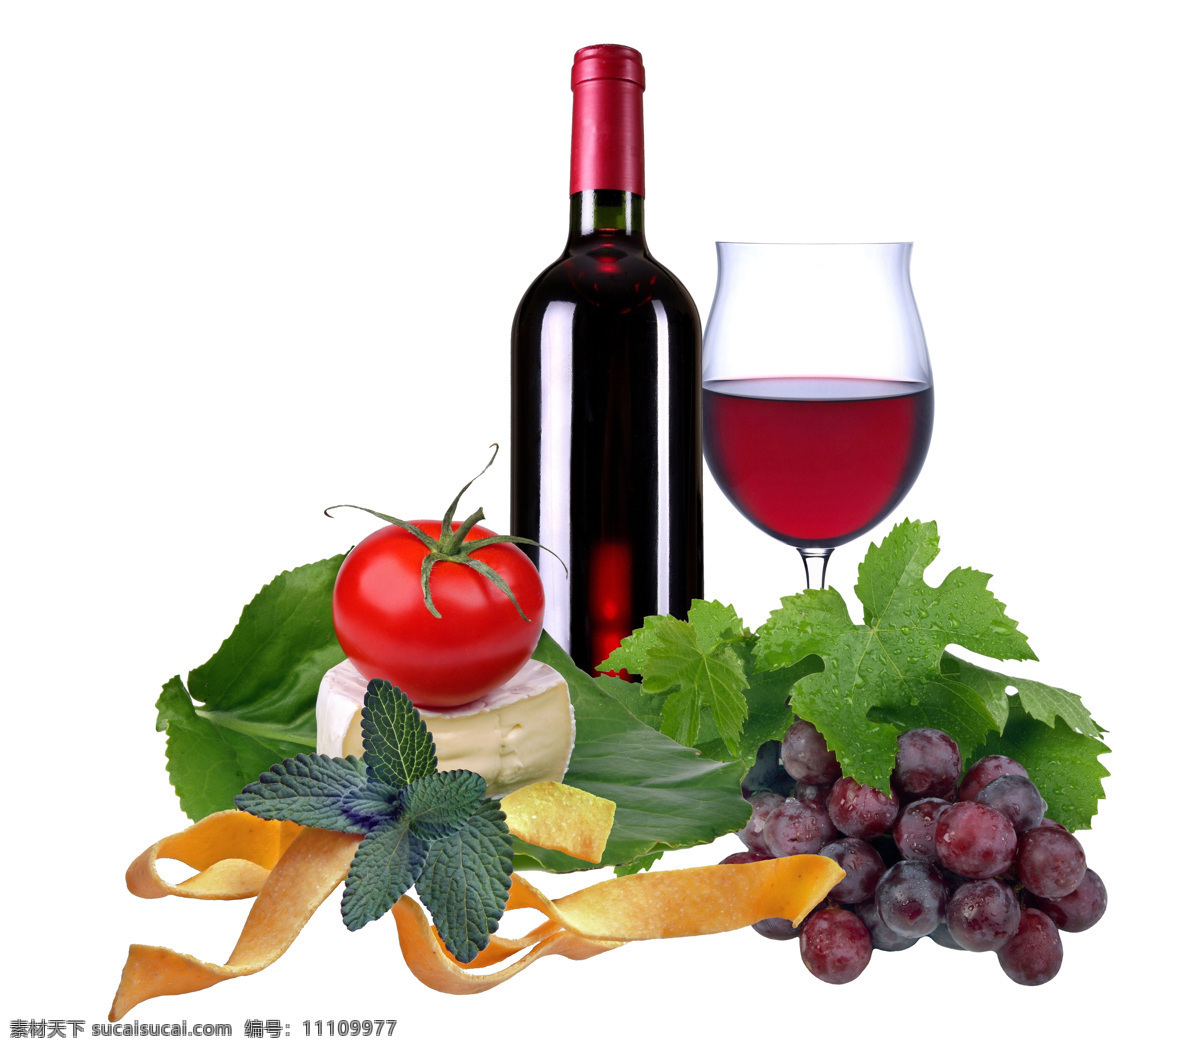 葡萄酒 葡萄 酒水 健康 营养 美味 红酒 西红柿 奶酪 饮料酒水 餐饮美食